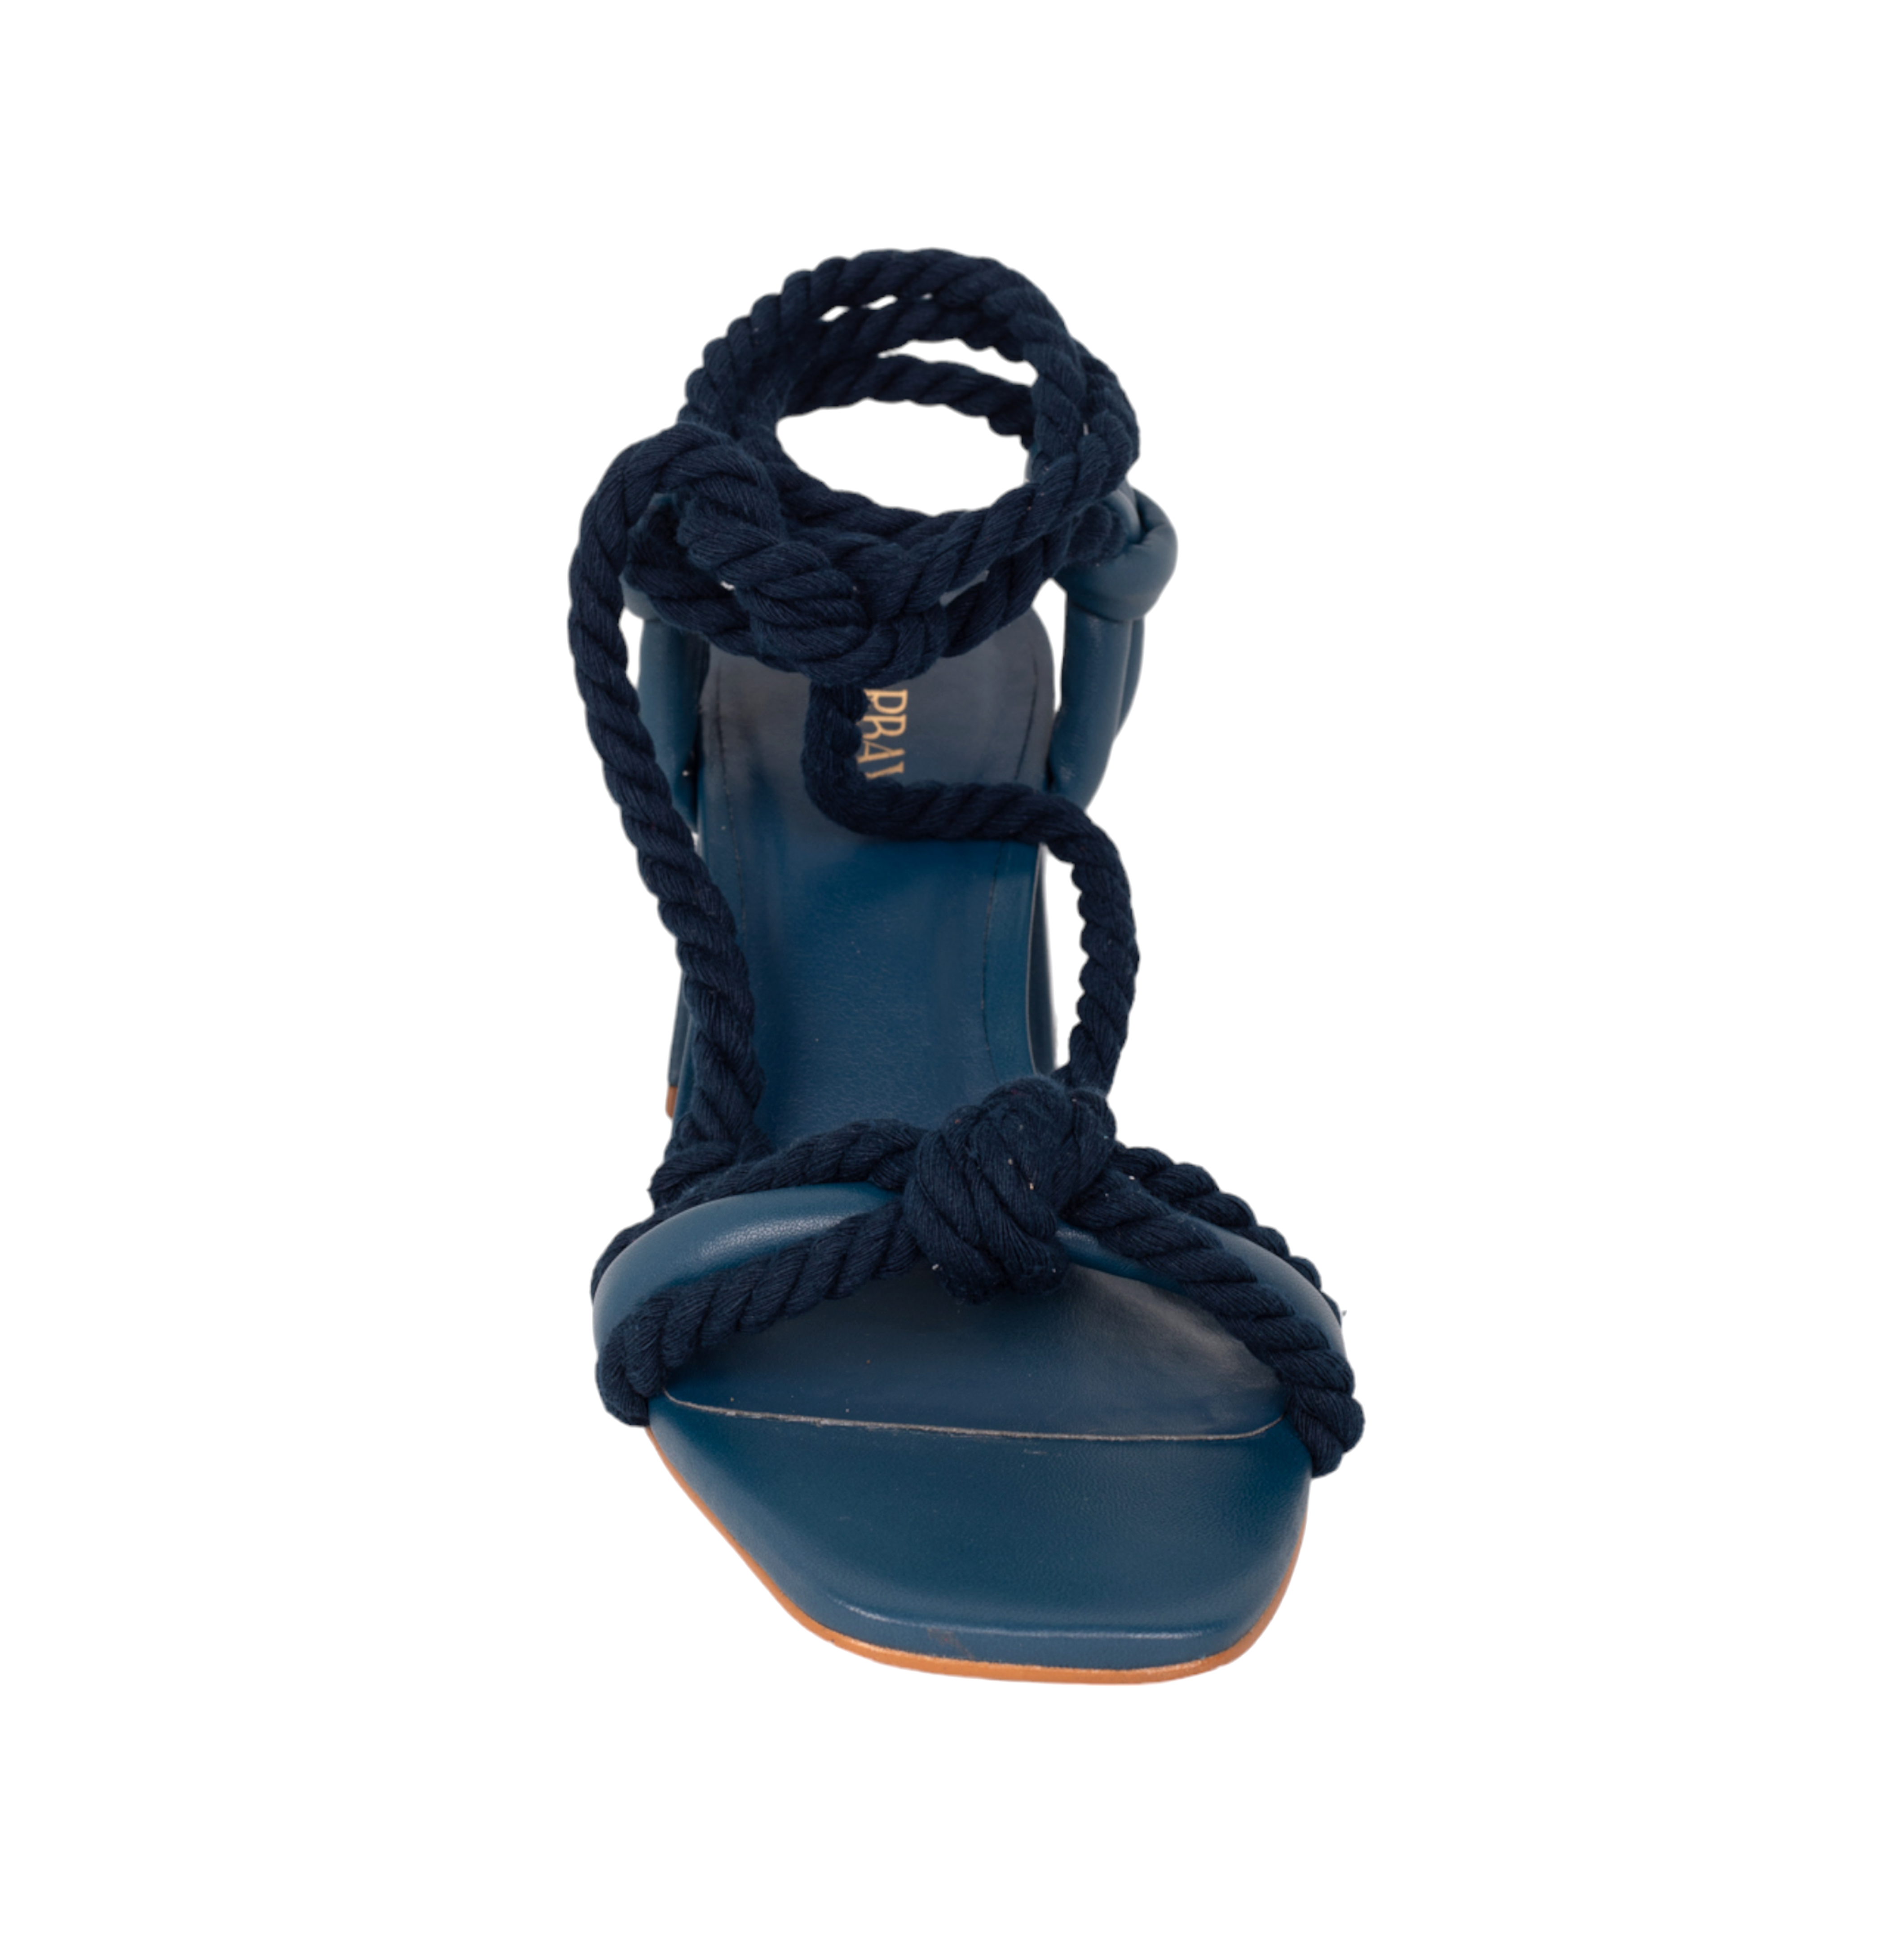 Arenisca Heels Sandals - Navy Blue Sandals TARBAY   